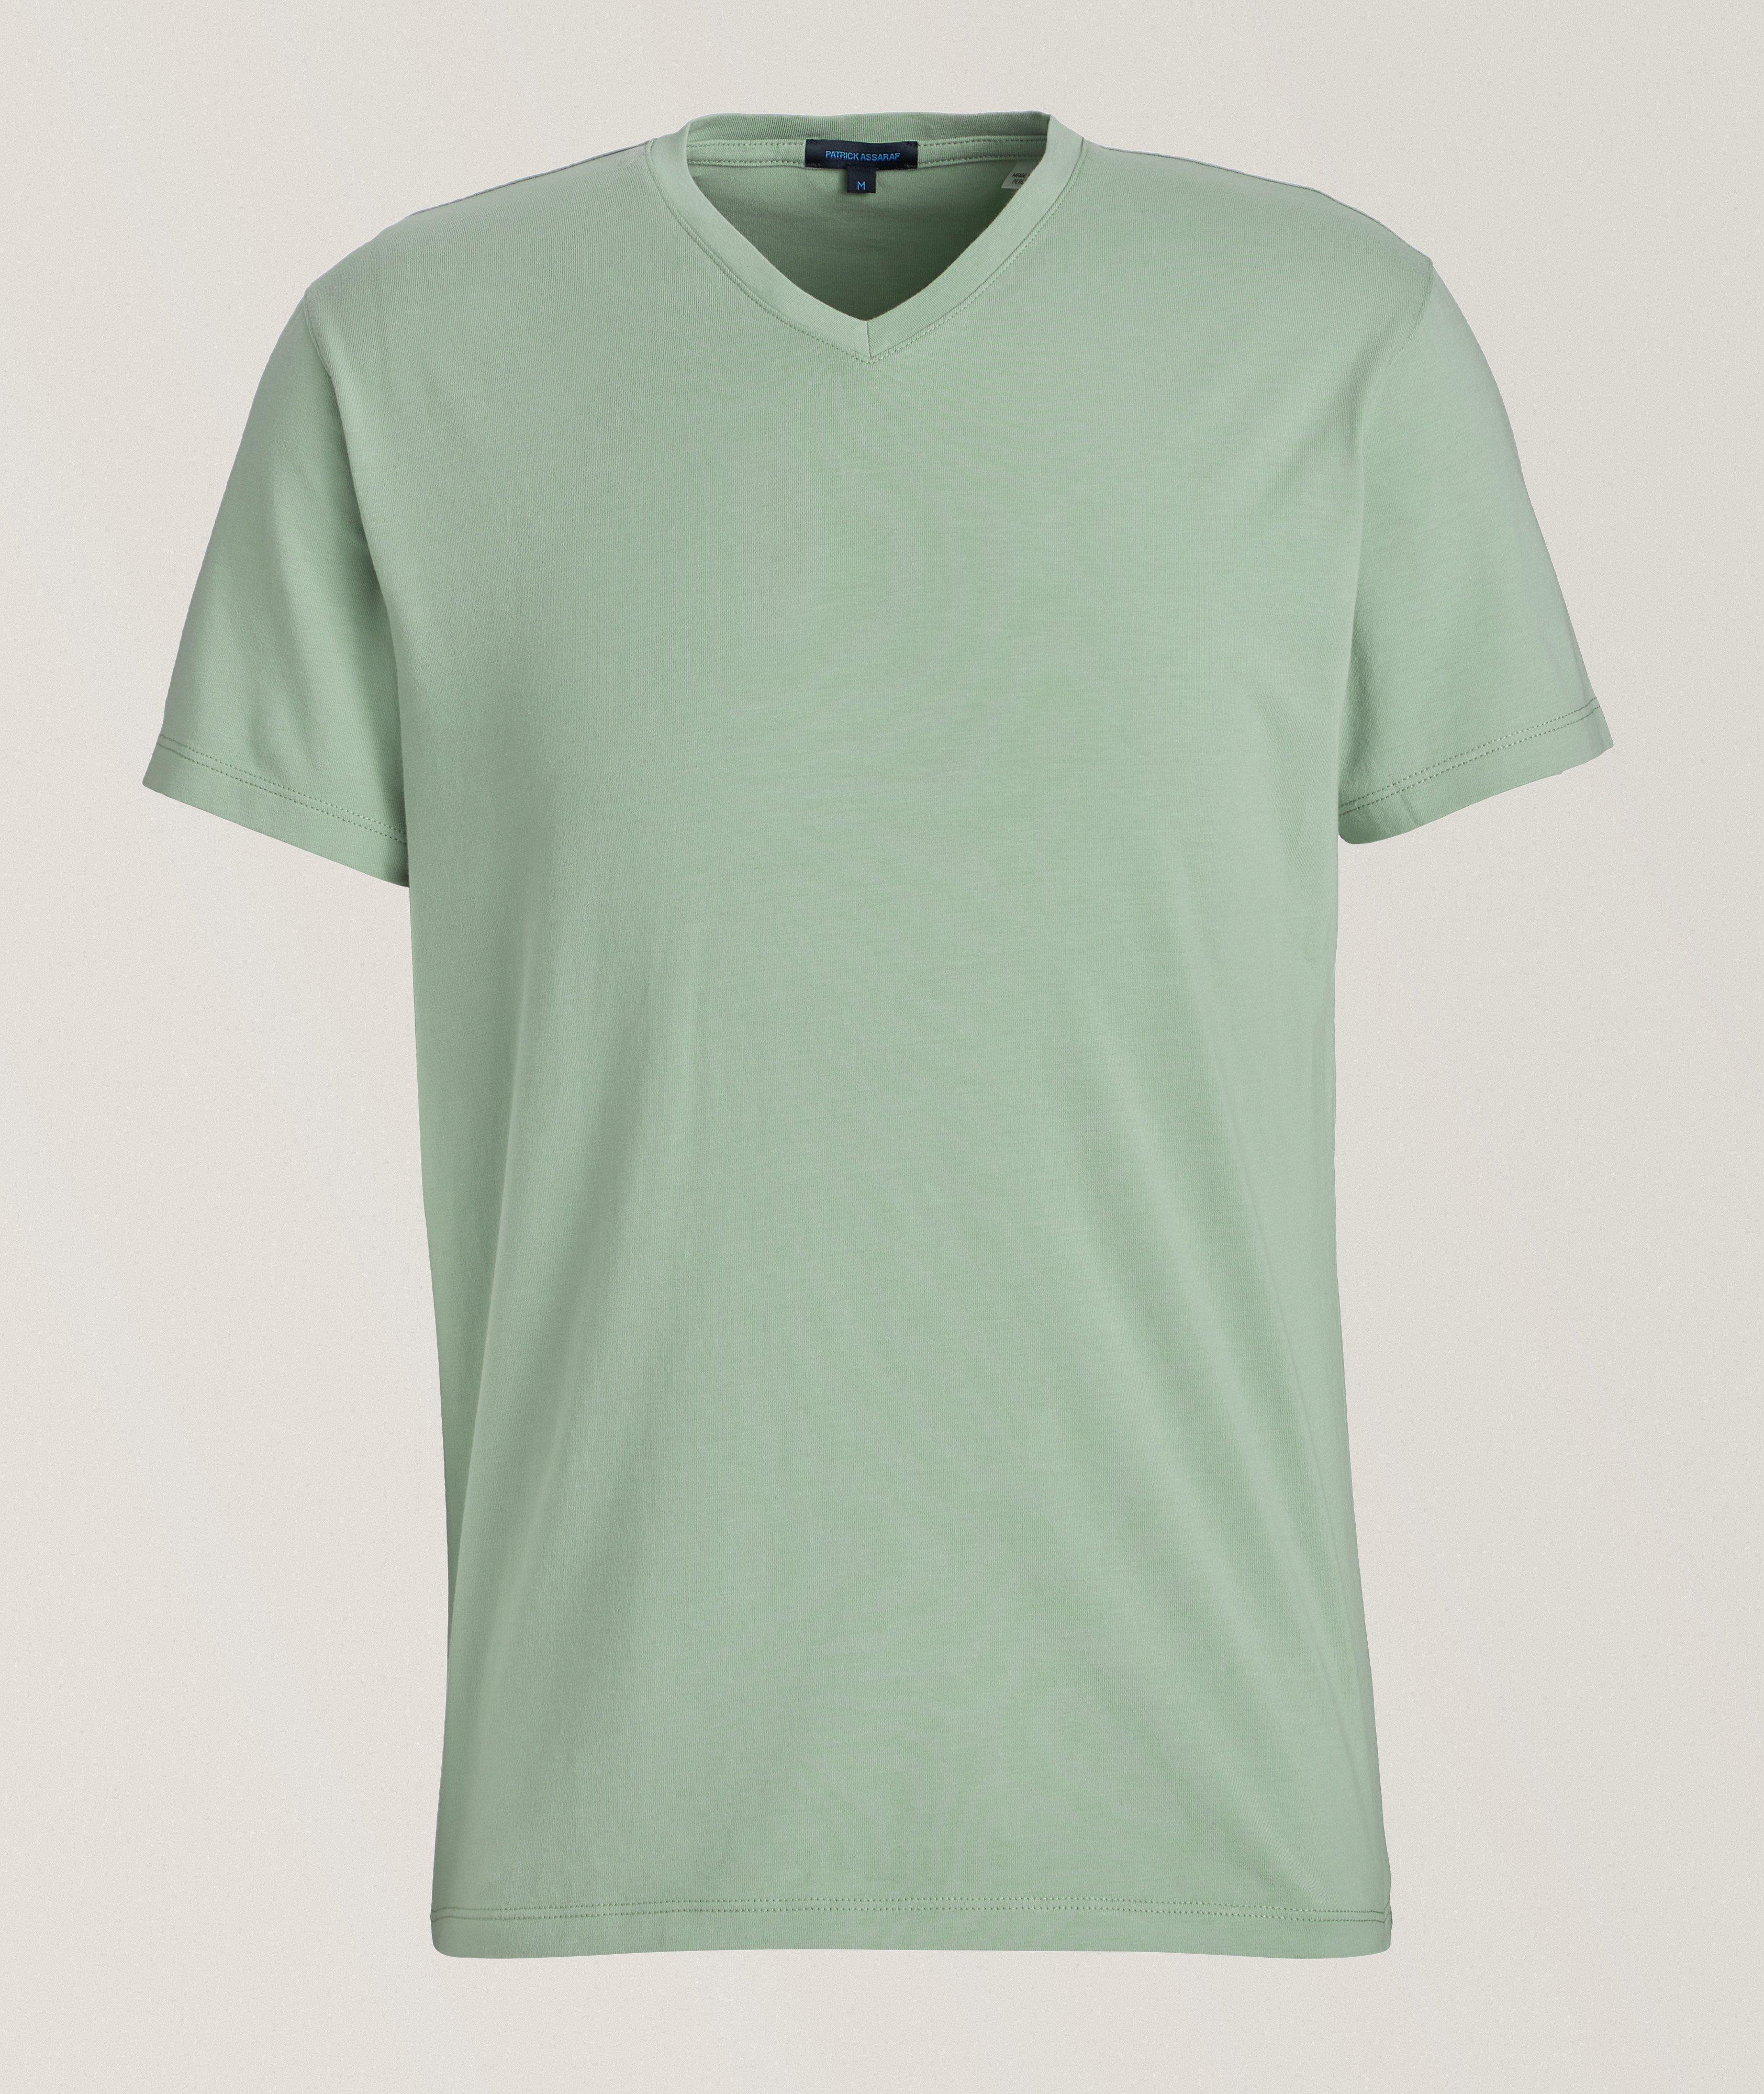 Pima Cotton-Stretch V-Neck T-Shirt image 0